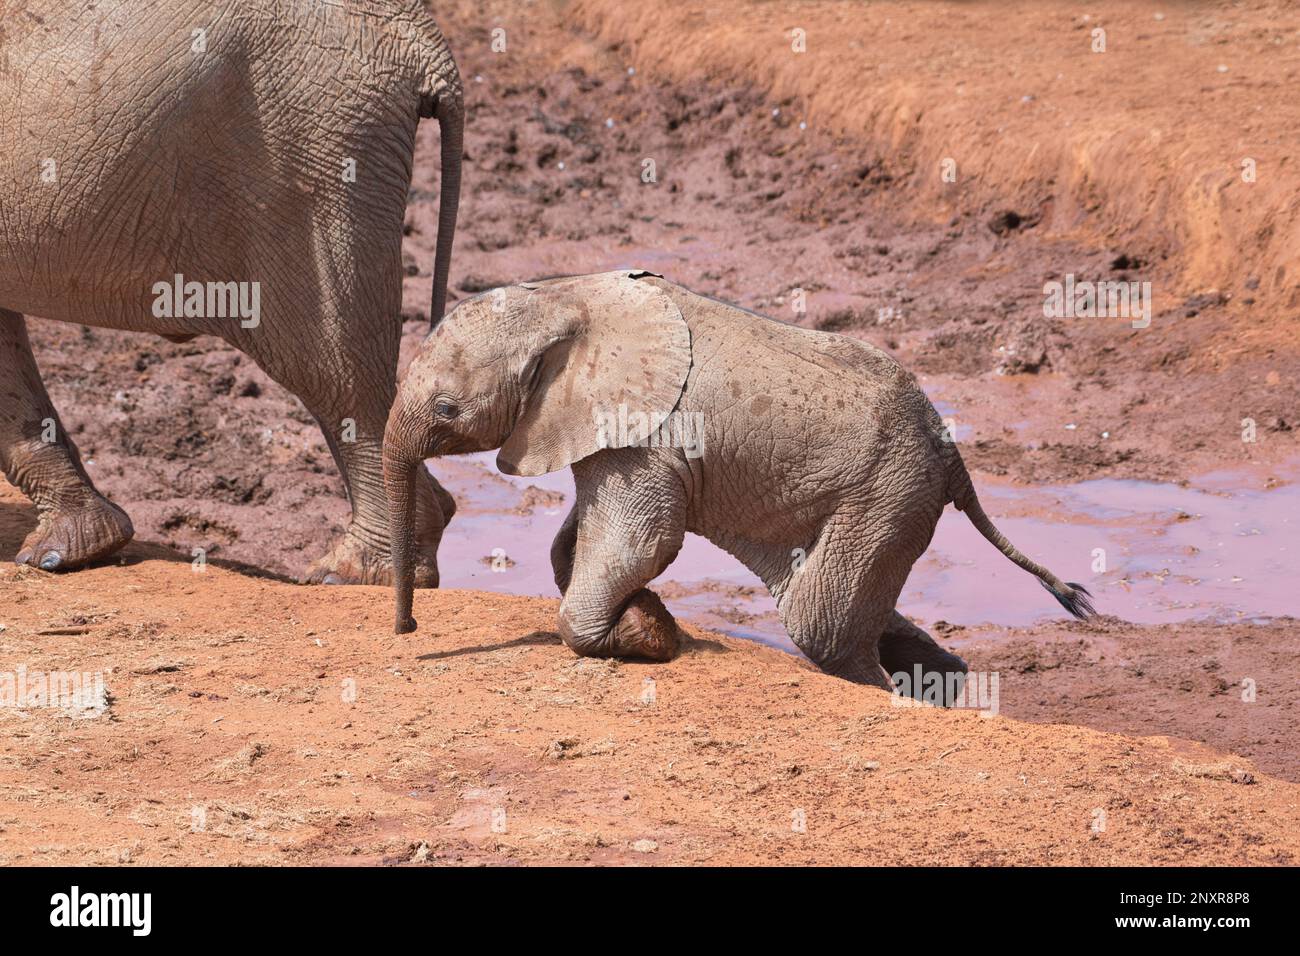 Afrikanischer Elefant (Loxodonta africana). Ein kleines Kalb hinterlässt ein Wasserloch, indem es seine Knie nutzt Stockfoto